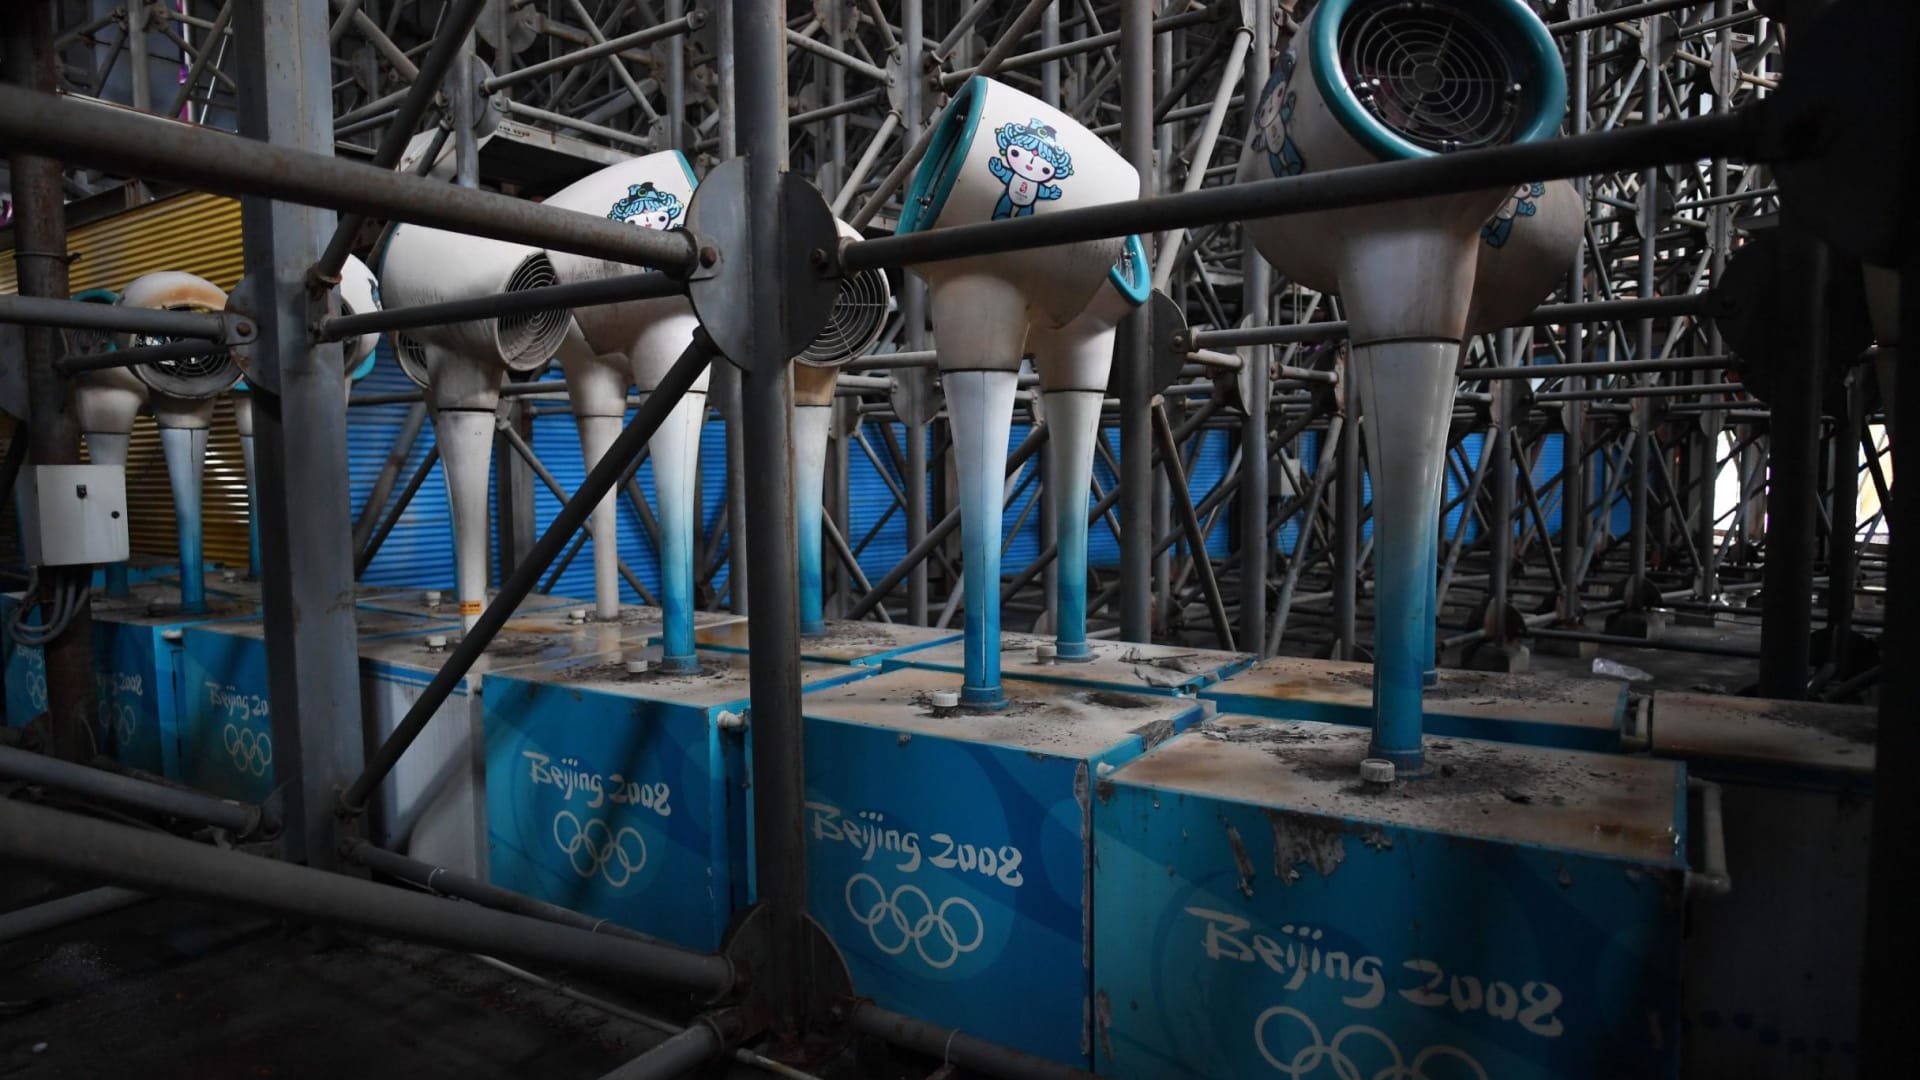 المرافق المهجورة لدورة الألعاب الأولمبية الصيفية لعام 2008 في بكين.	